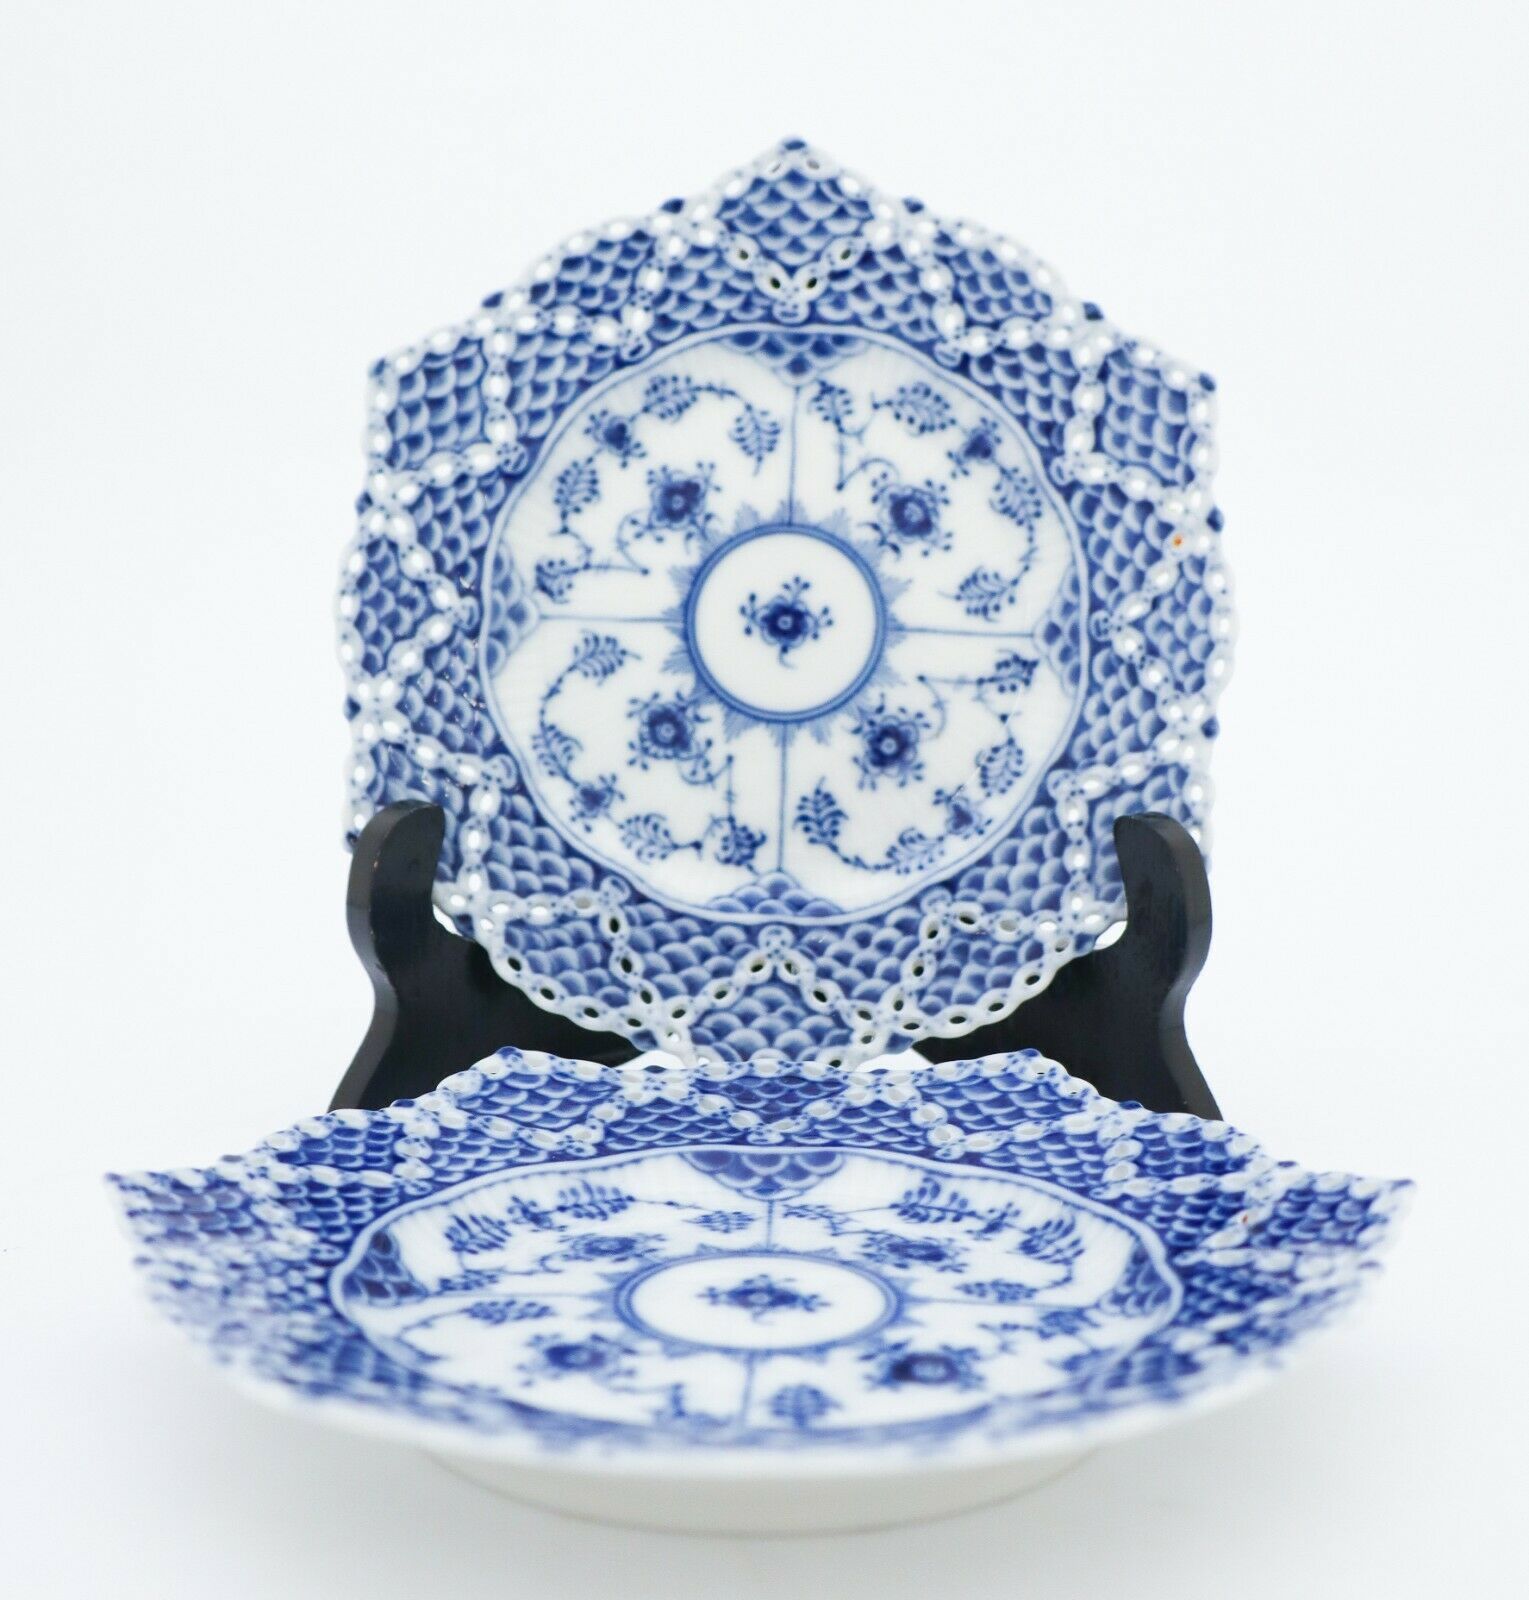 2 Plates #1144 - Blue Fluted - Royal Copenhagen Double Lace - 1st Quality